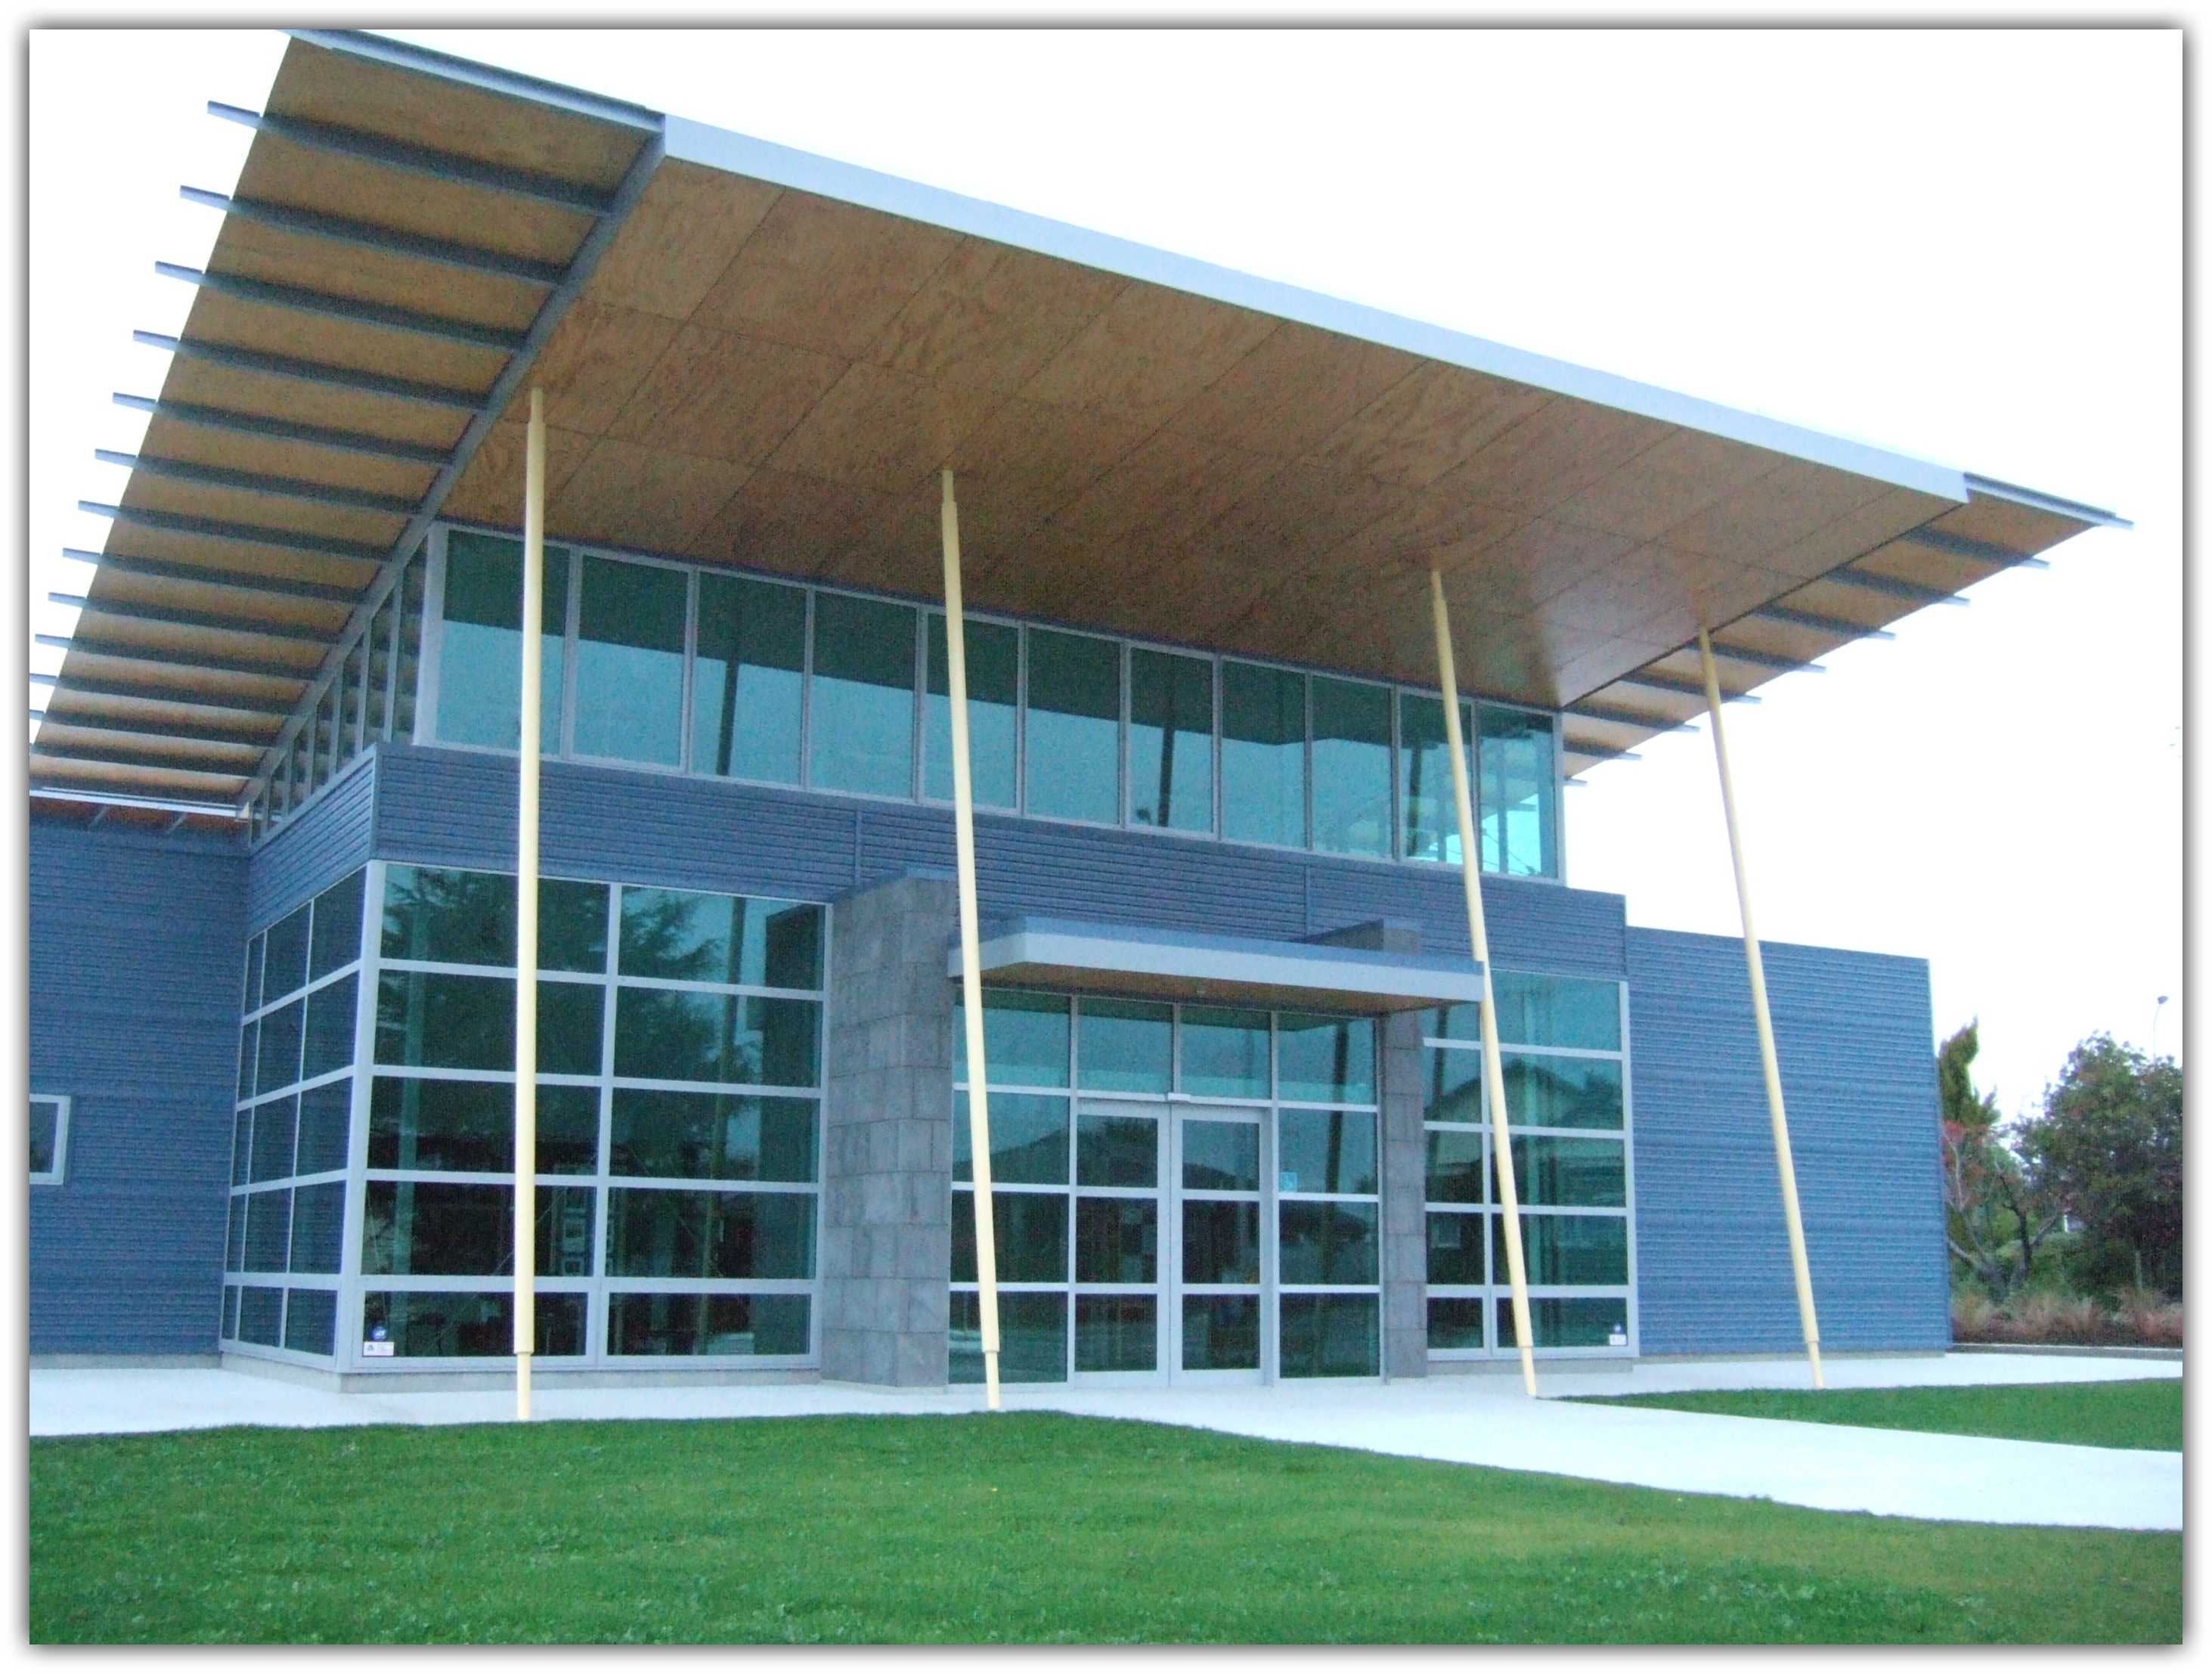 Timaru Technology Center